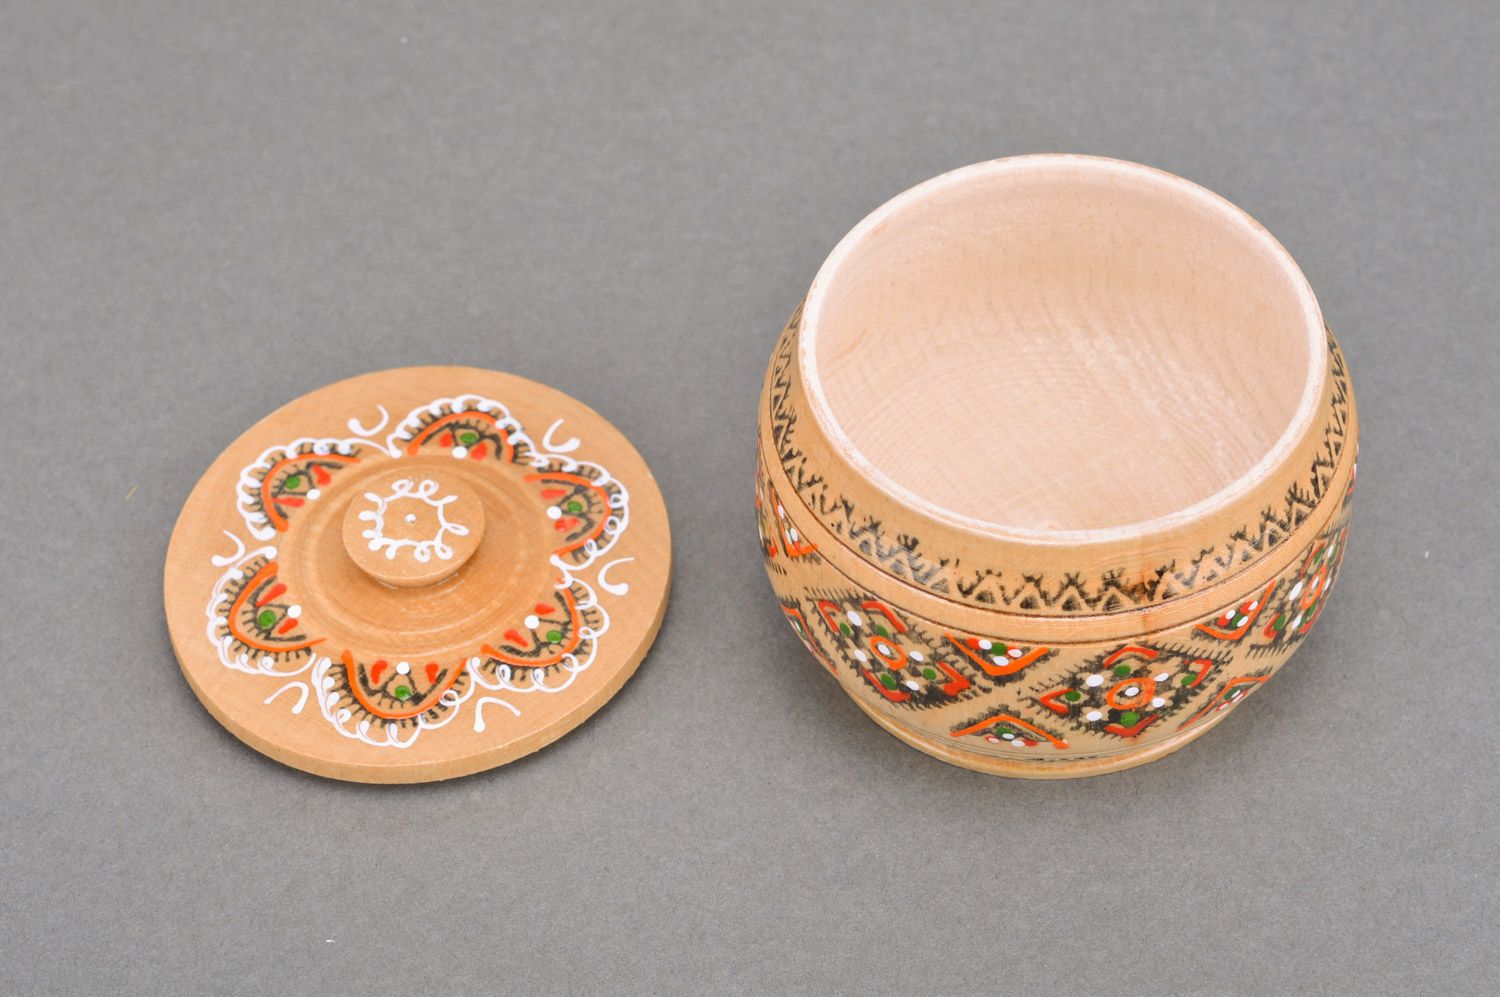 Boîte ronde en bois claire peinte de style ethnique faite main cadeau pour femme photo 2